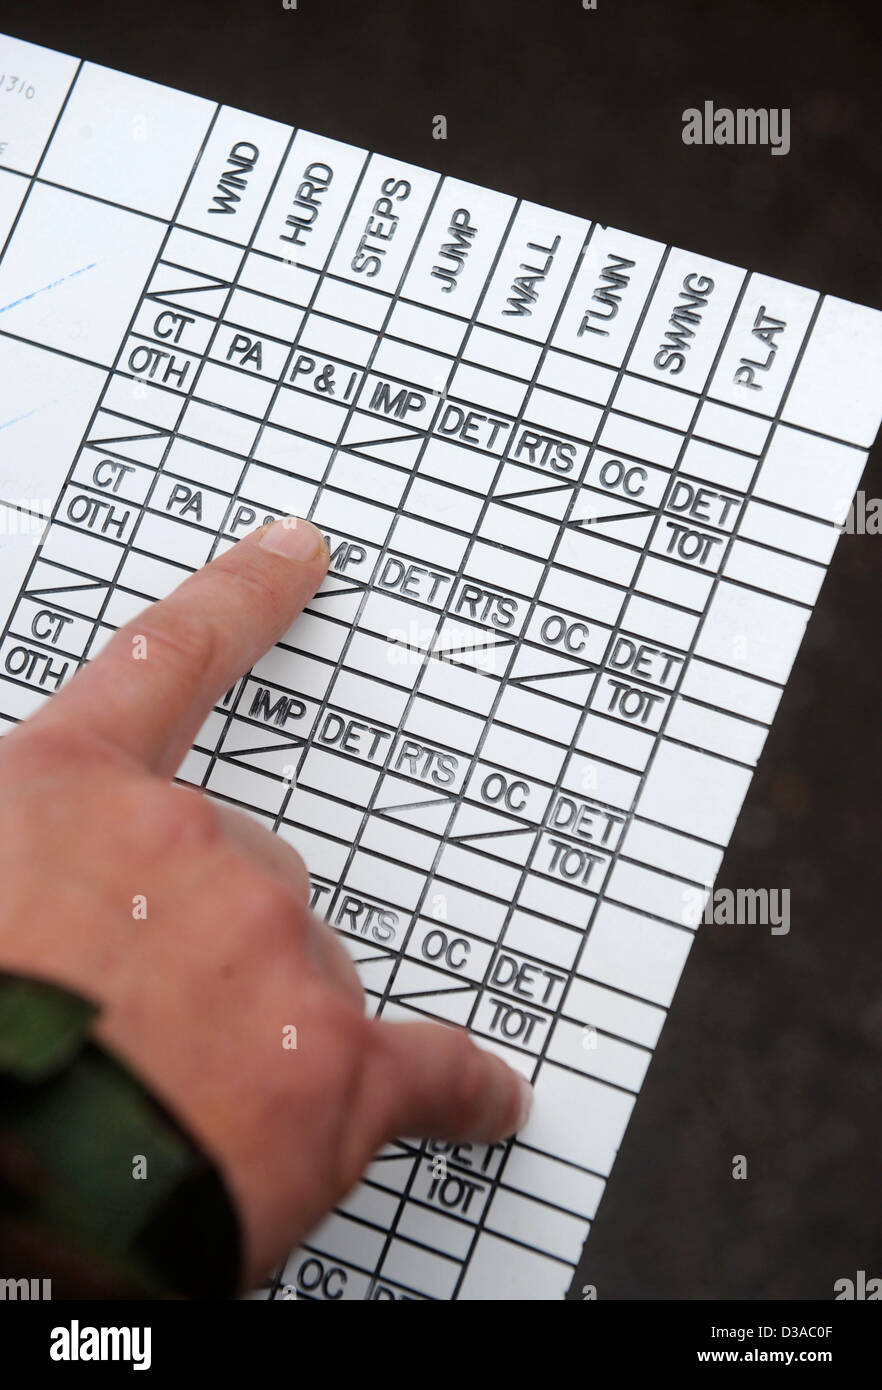 Ein recruiting-Offizier mit einem Diagramm von Tests für potenzielle Rekruten bei der Offizier Prüfungsausschuß bei Westbury, Wiltshire UK Stockfoto